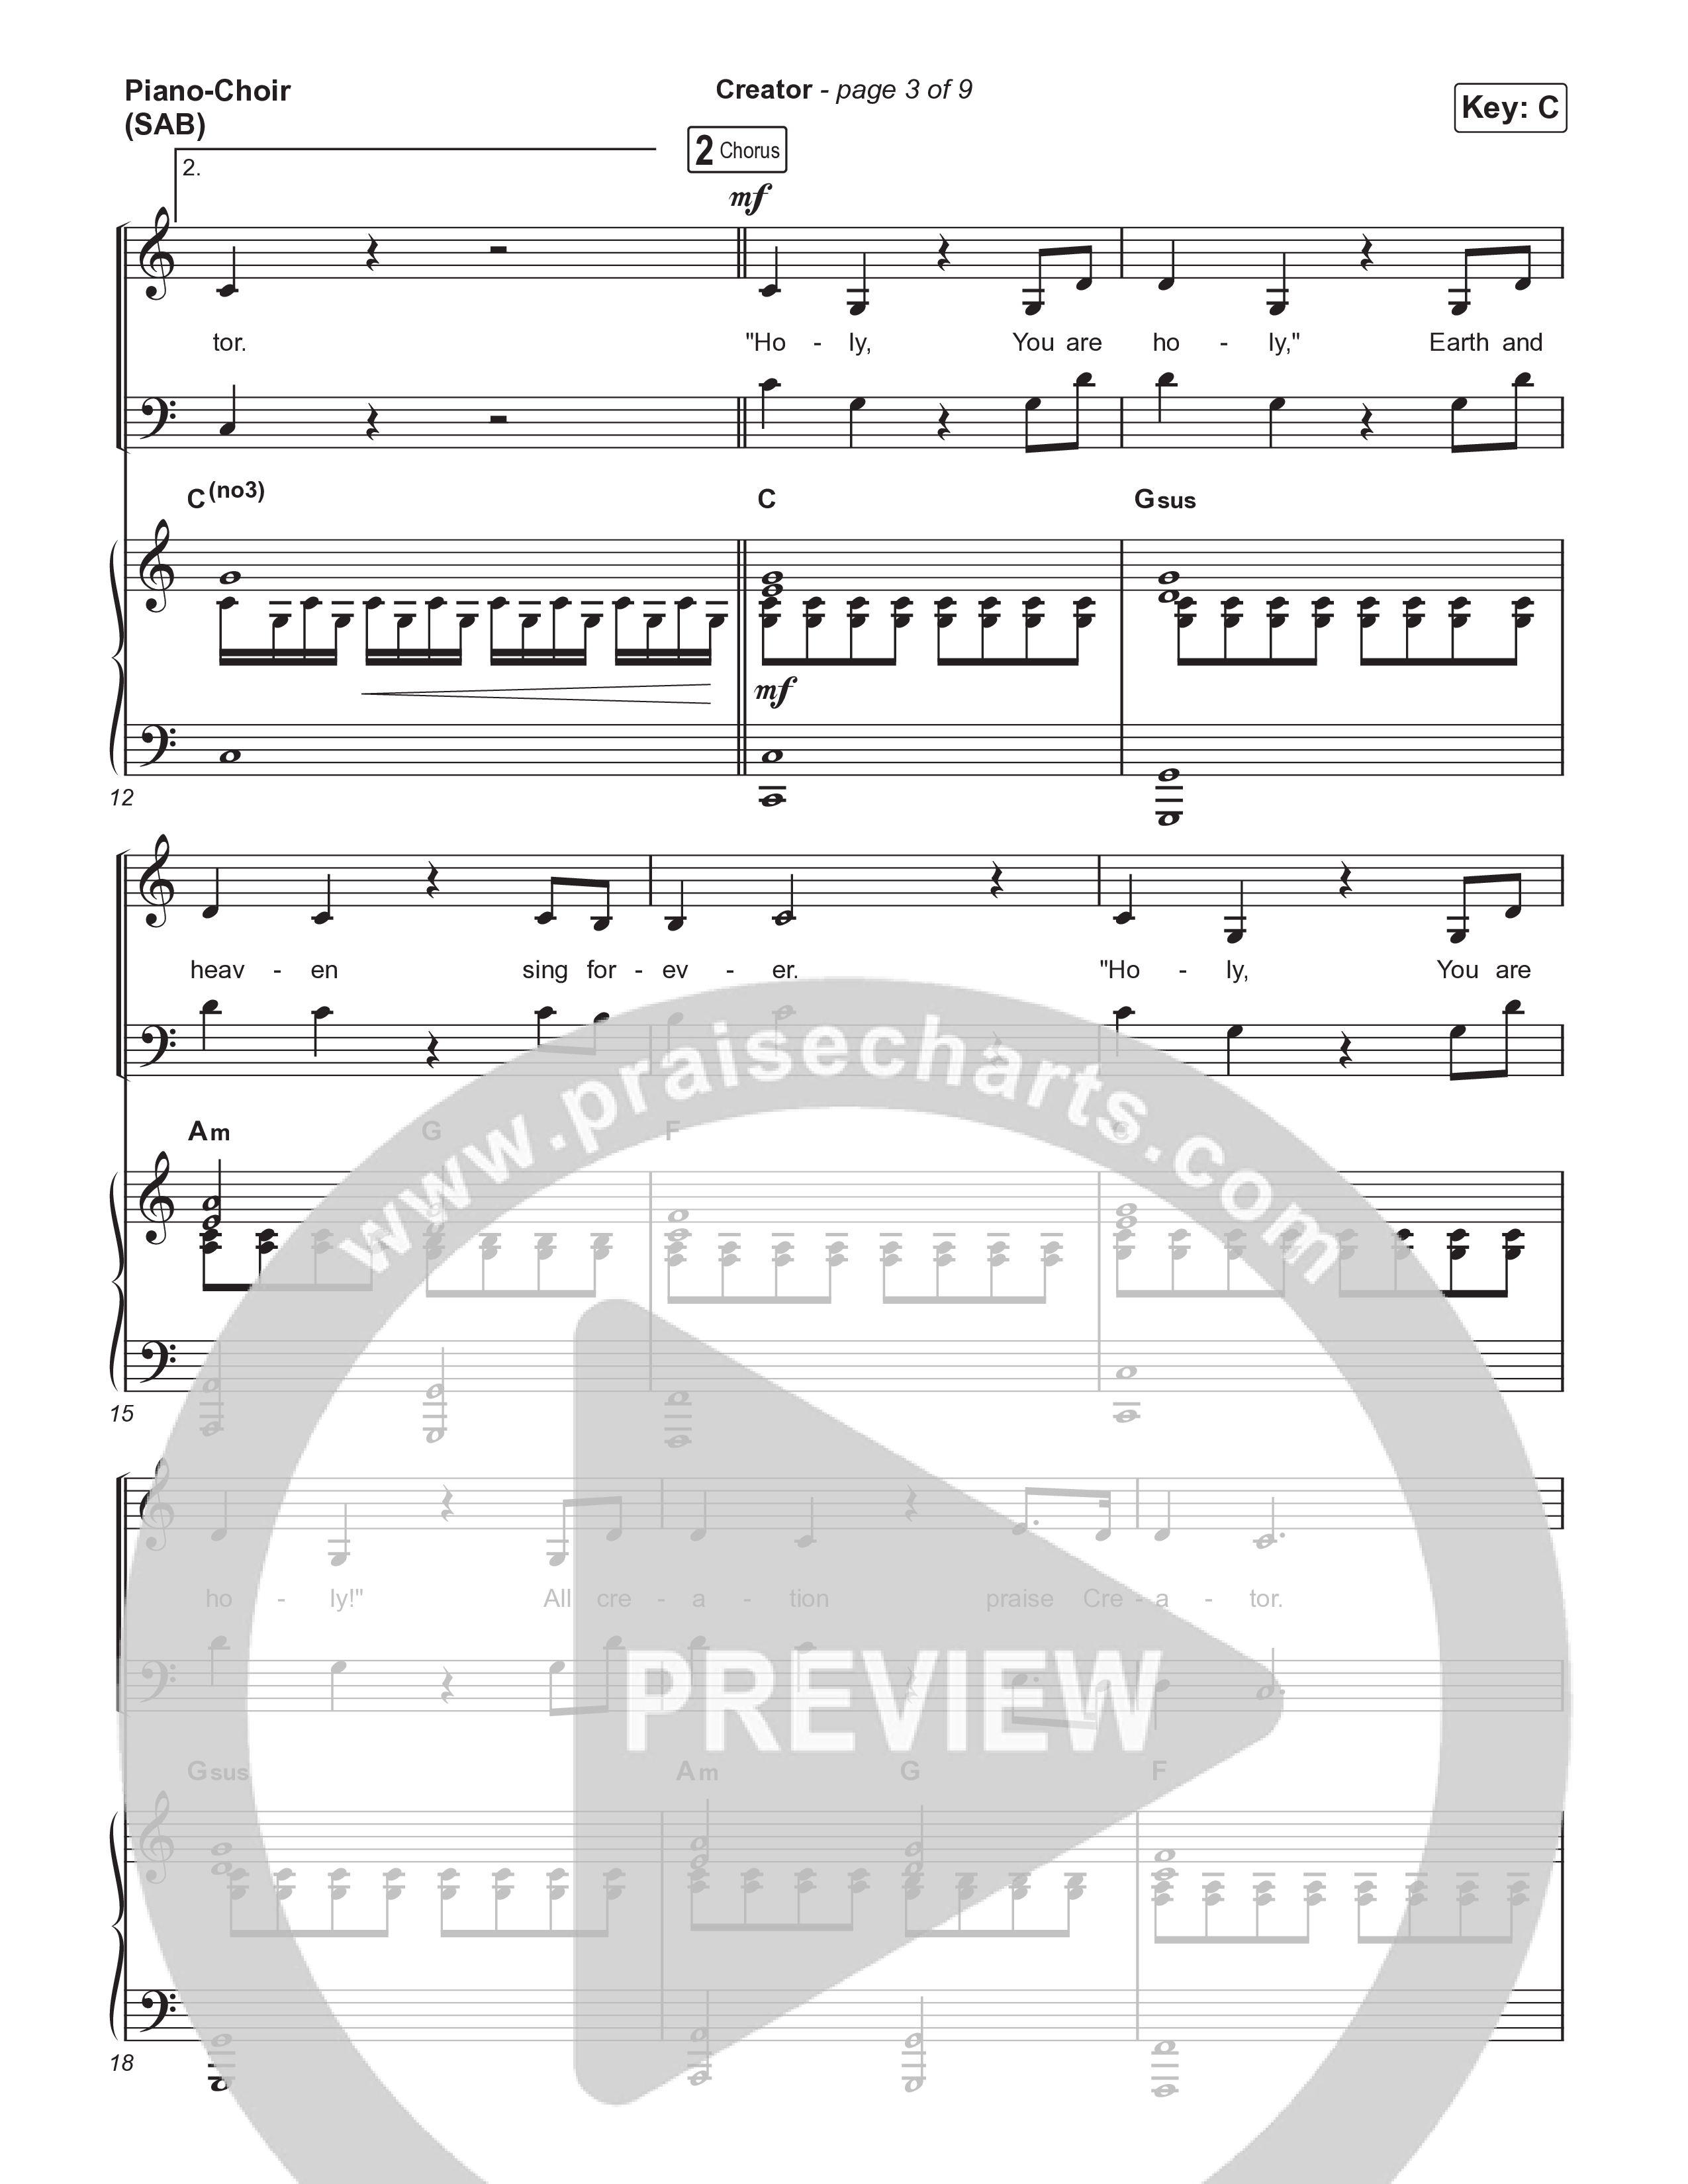 Creator (Worship Choir/SAB) Piano/Choir (SAB) (Phil Wickham)